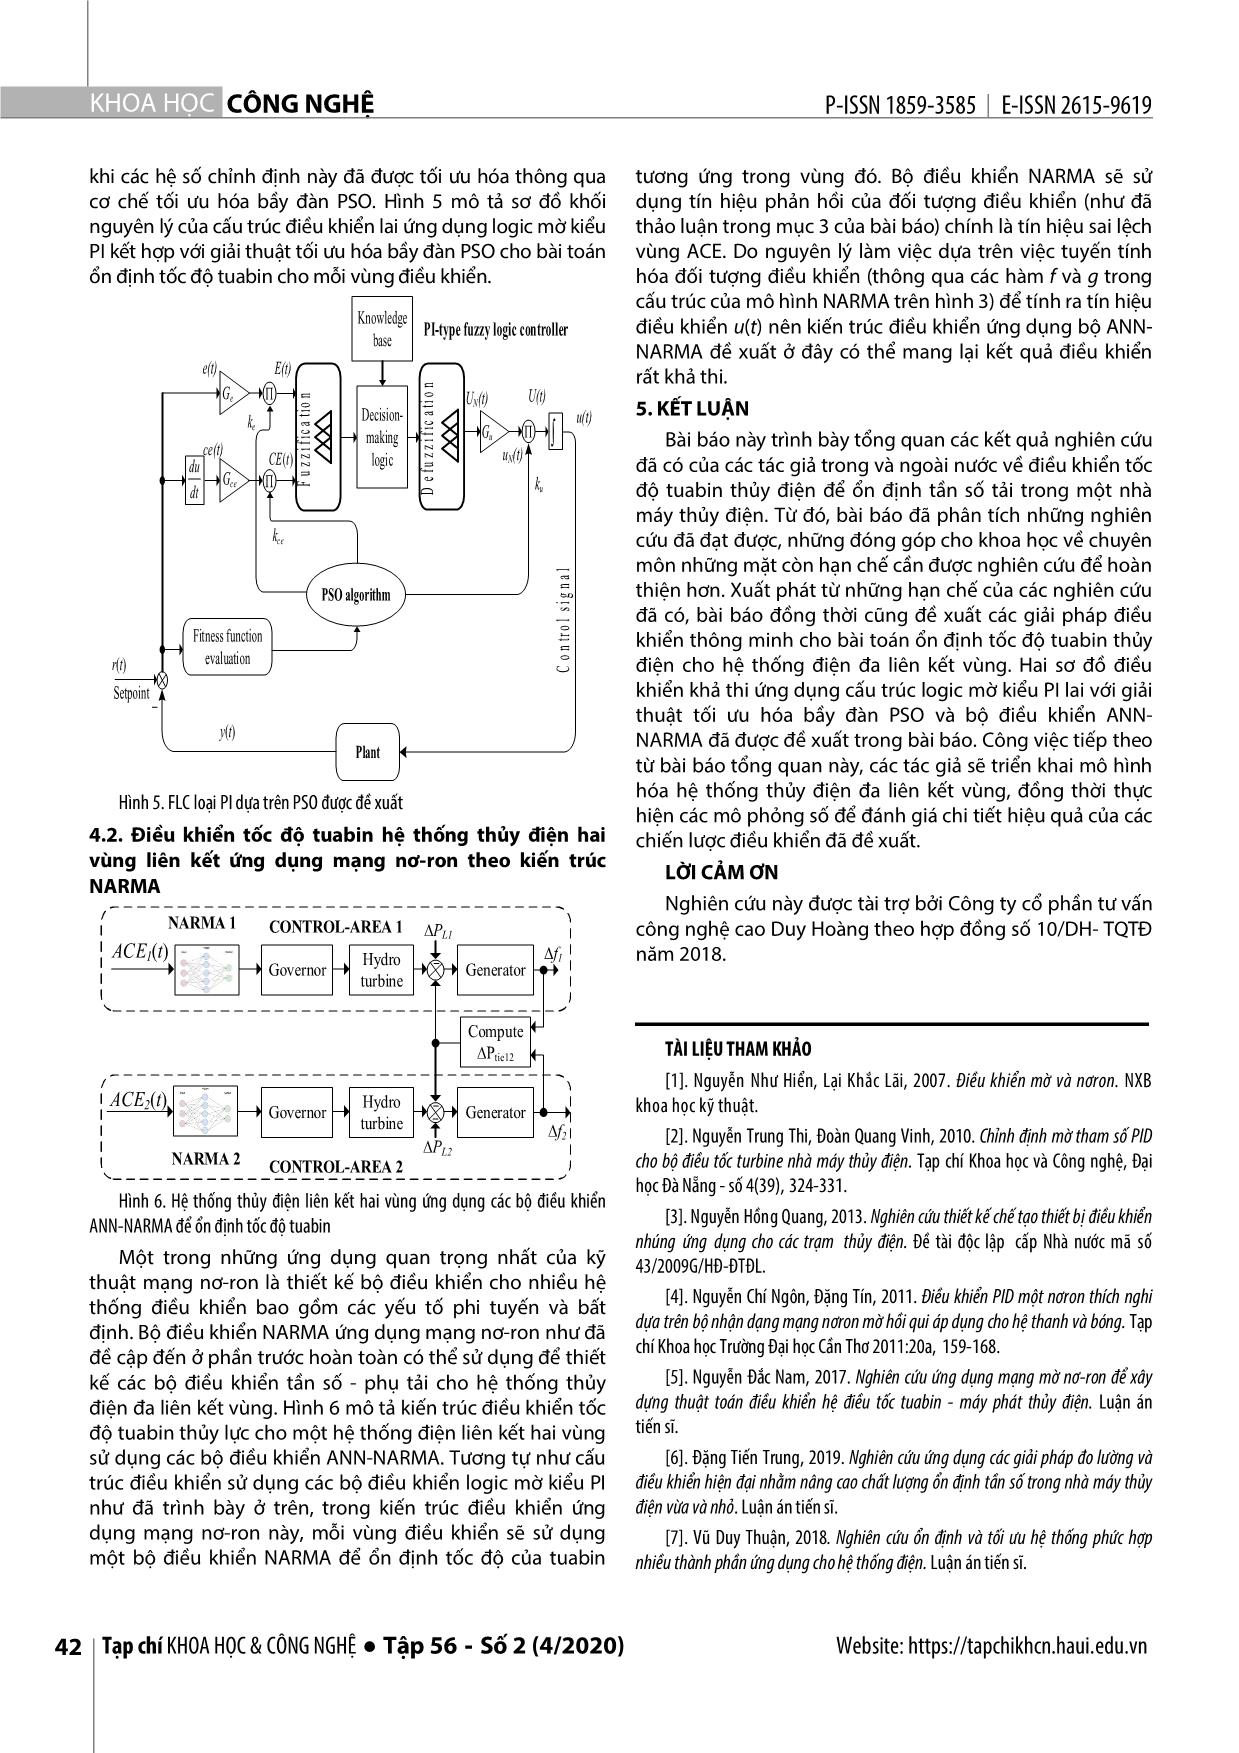 Tổng quan về điều khiển tốc độ tuabin trong hệ thống thủy điện liên kết vùng để ổn định tần số lưới trang 5